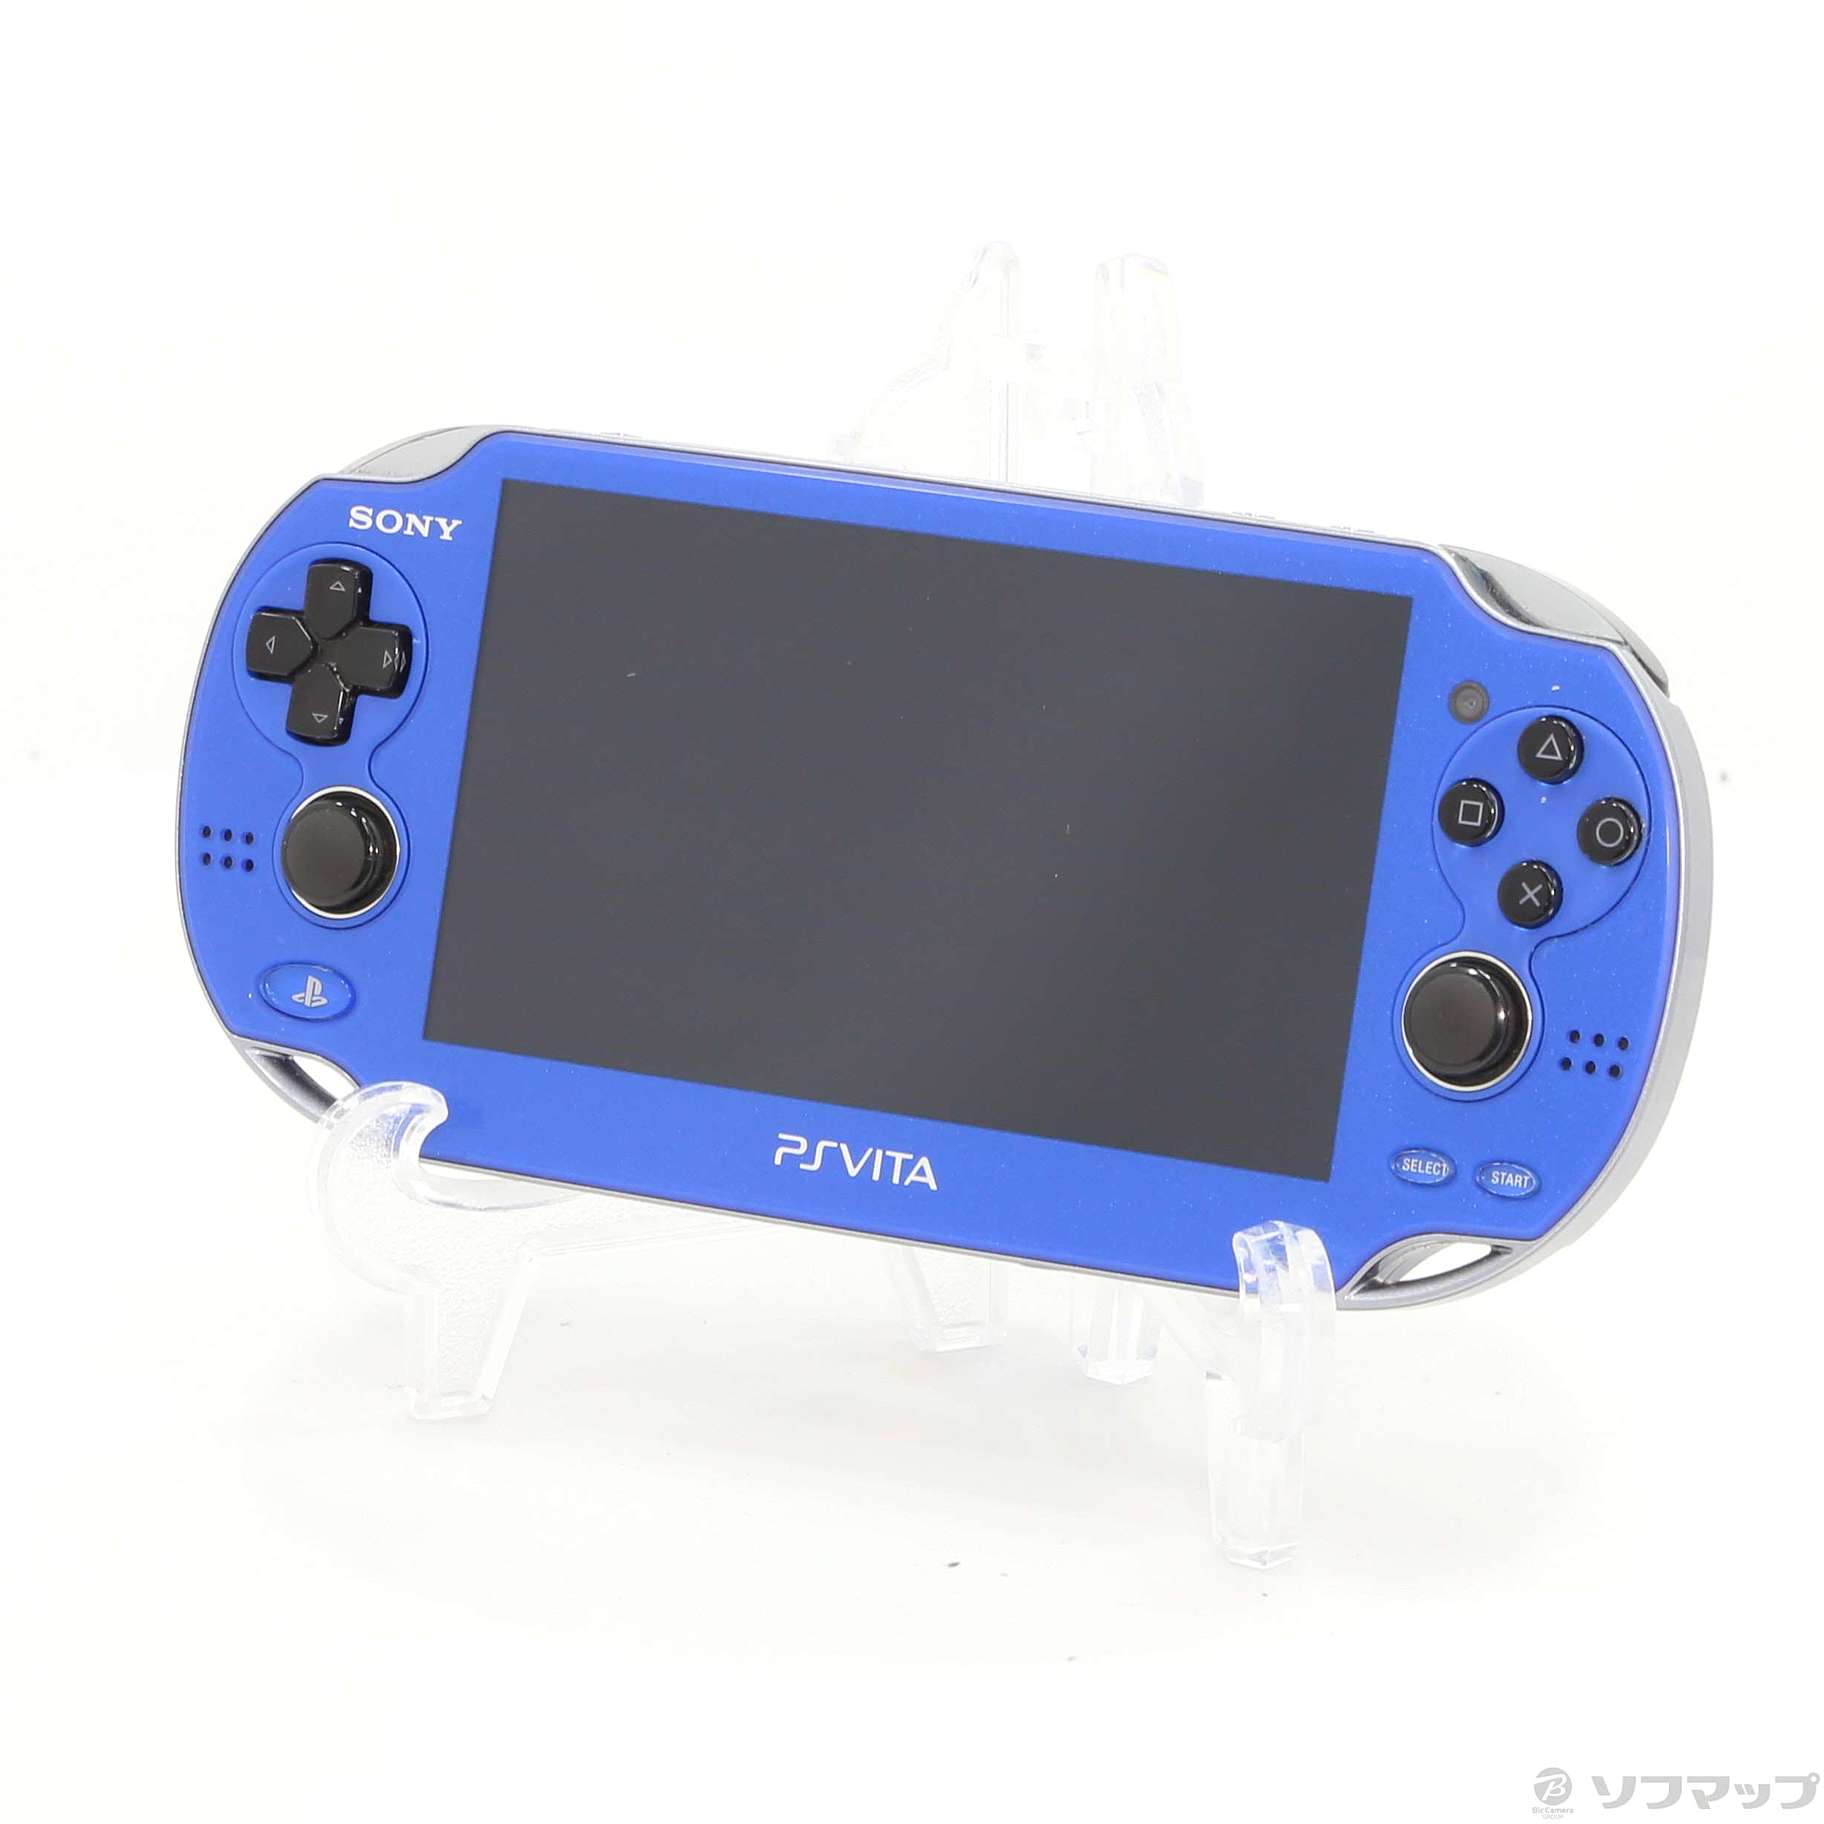 正規取扱販売店 PlayStation®Vita サファイア・ブルー 3G/Wi-Fiモデル … 携帯用ゲーム本体